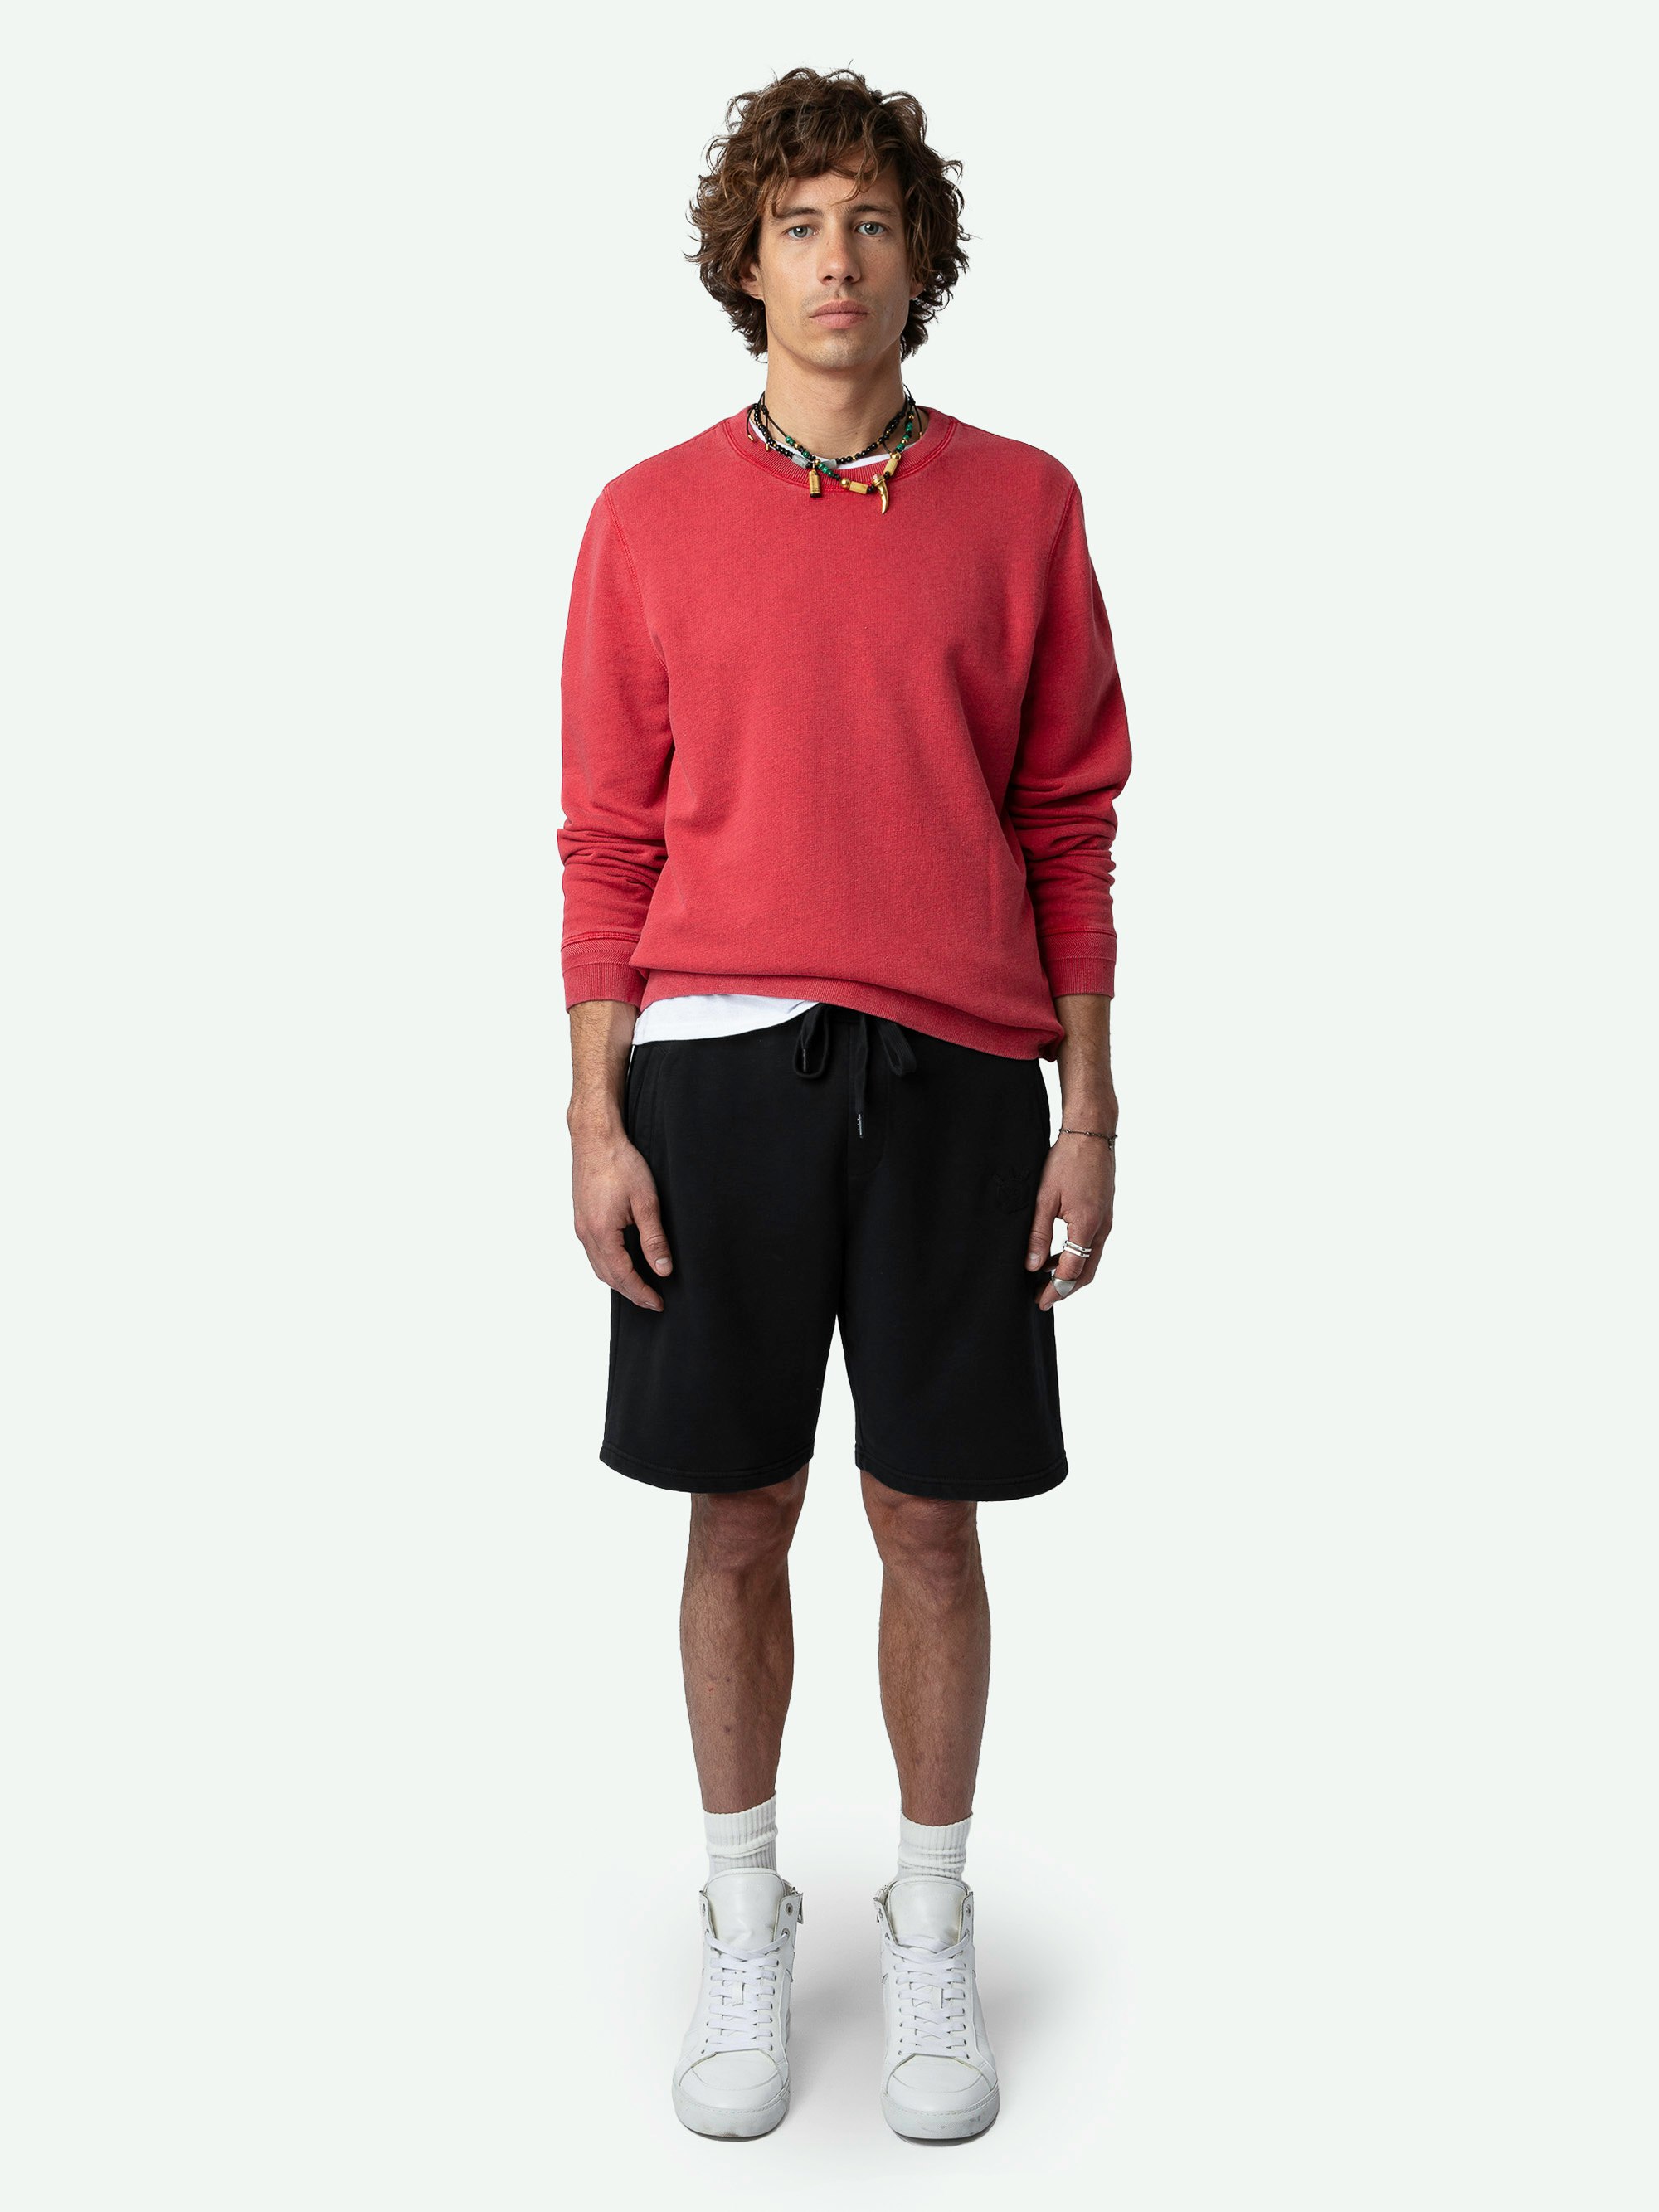 Sweatshirt Stony - Sweatshirt en coton biologique rose à manches longues et broderie poème au dos.